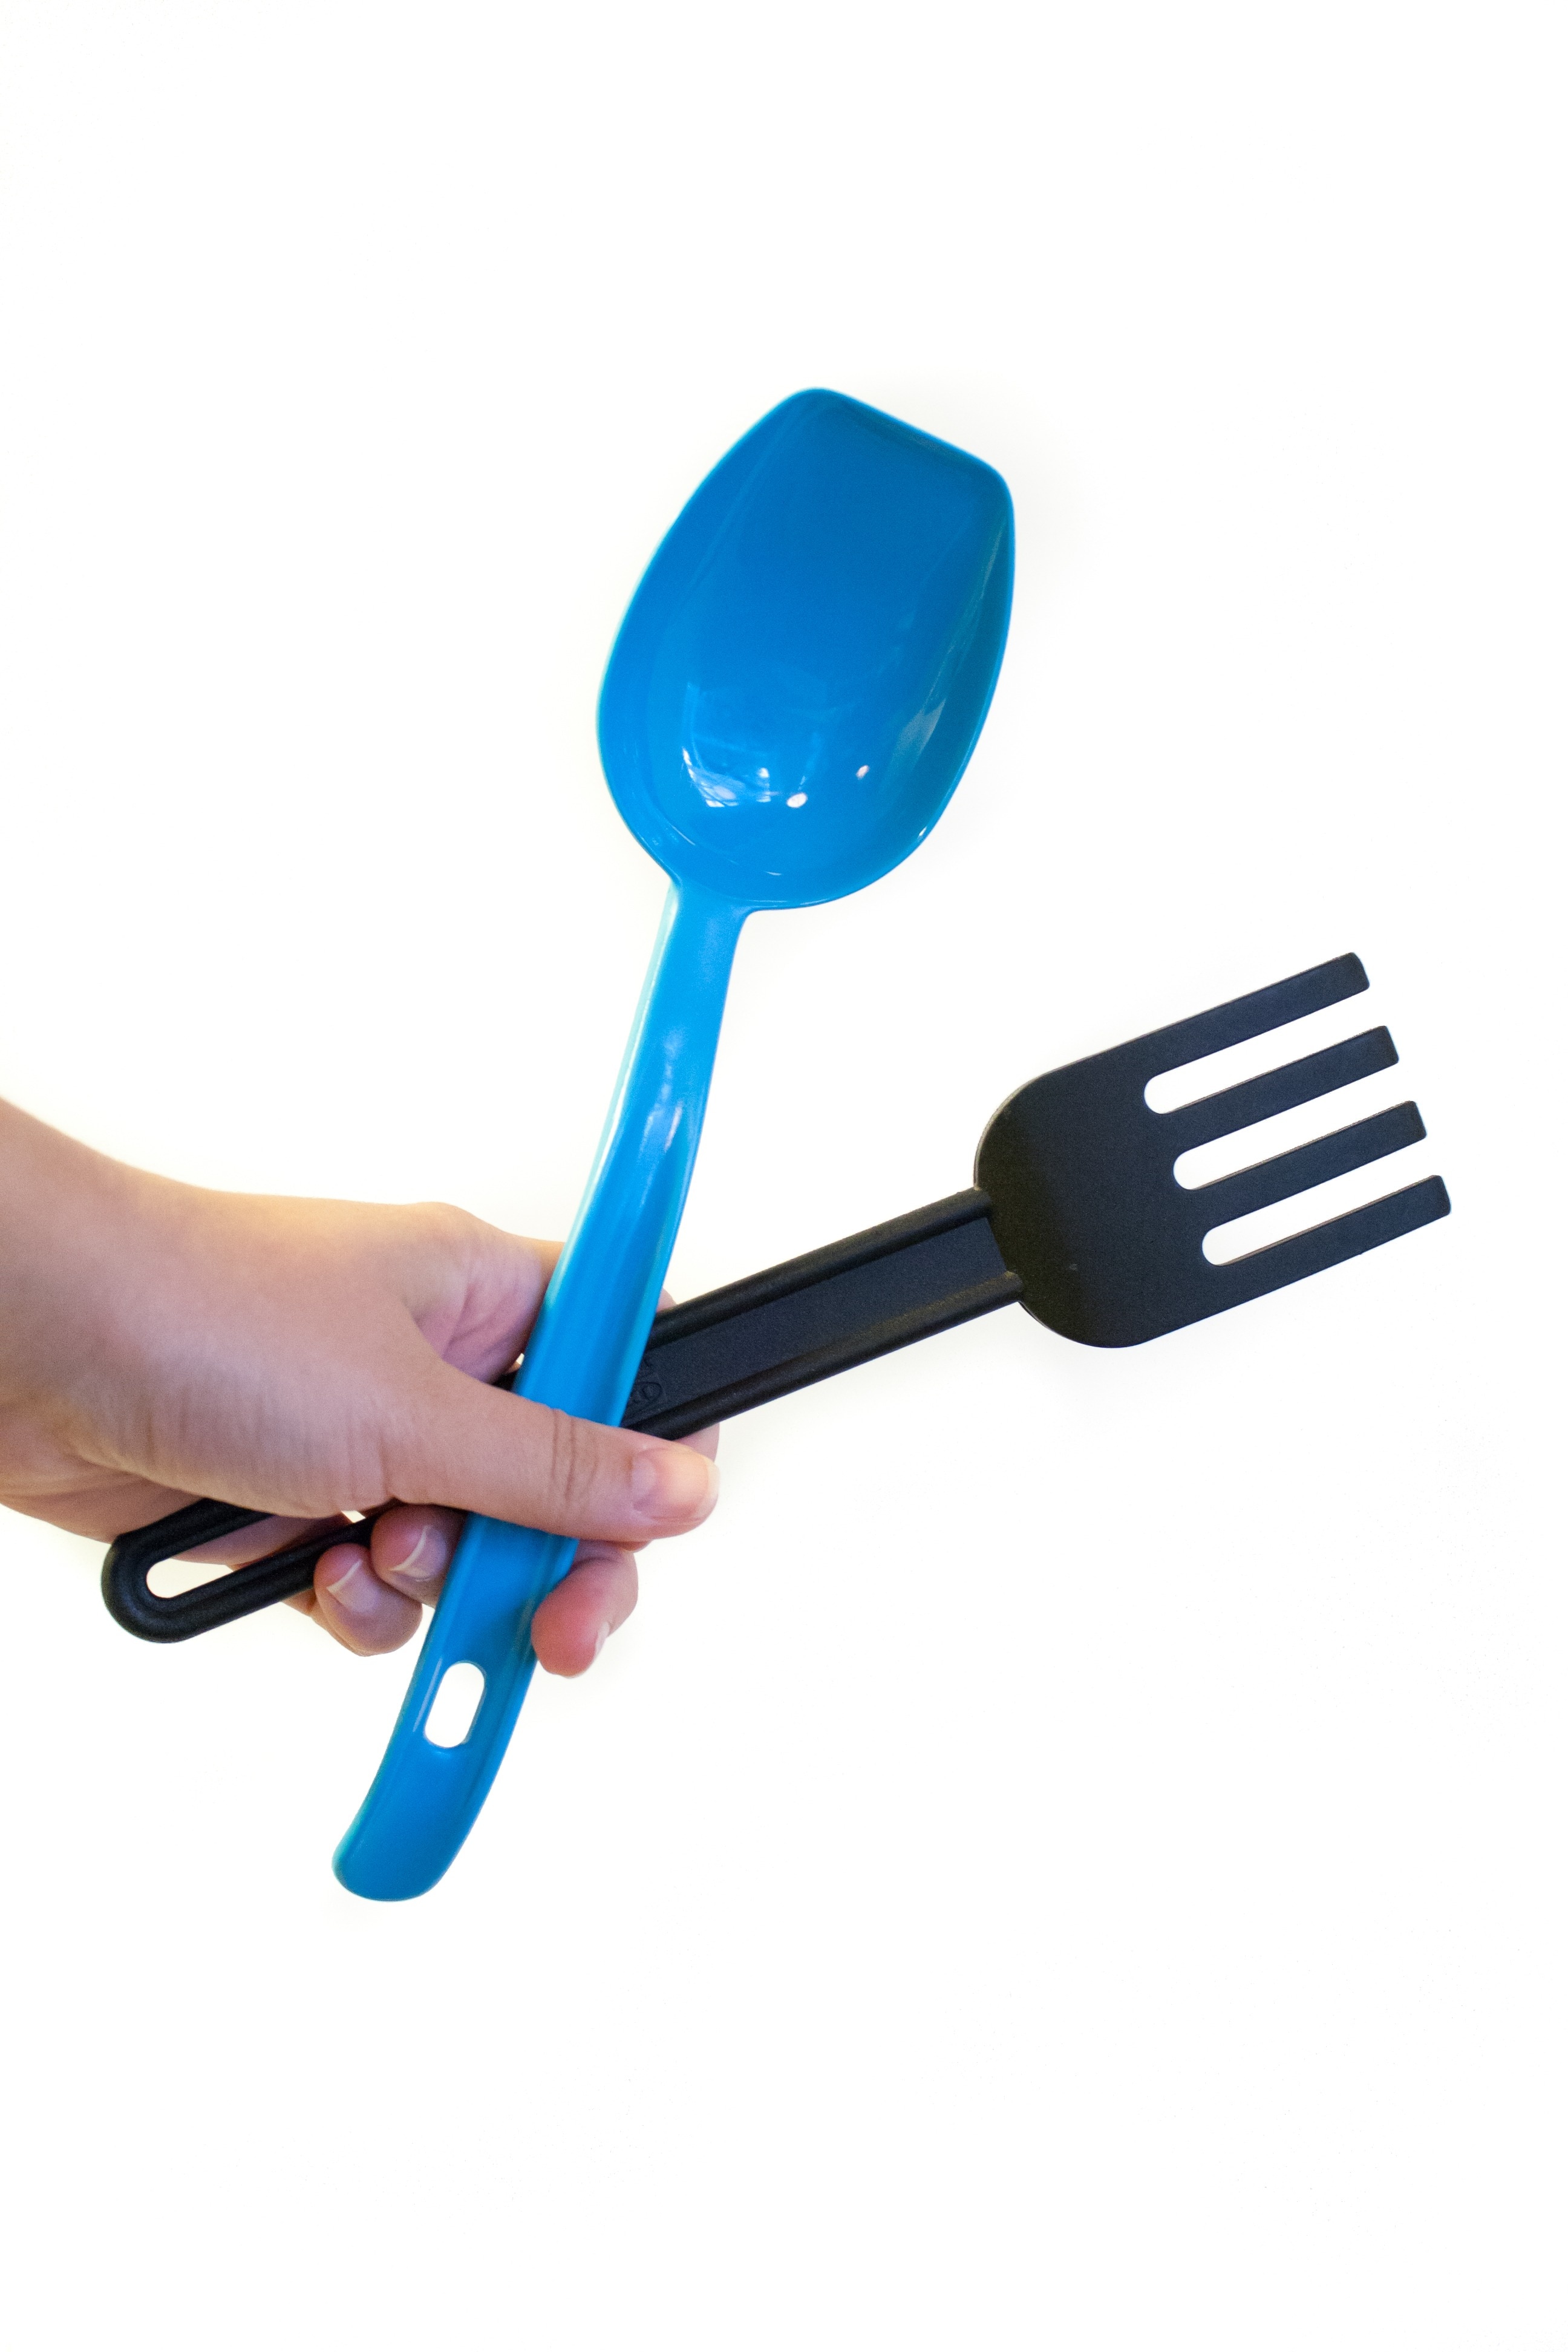 black plastic fork ladle and blue plastic ladle